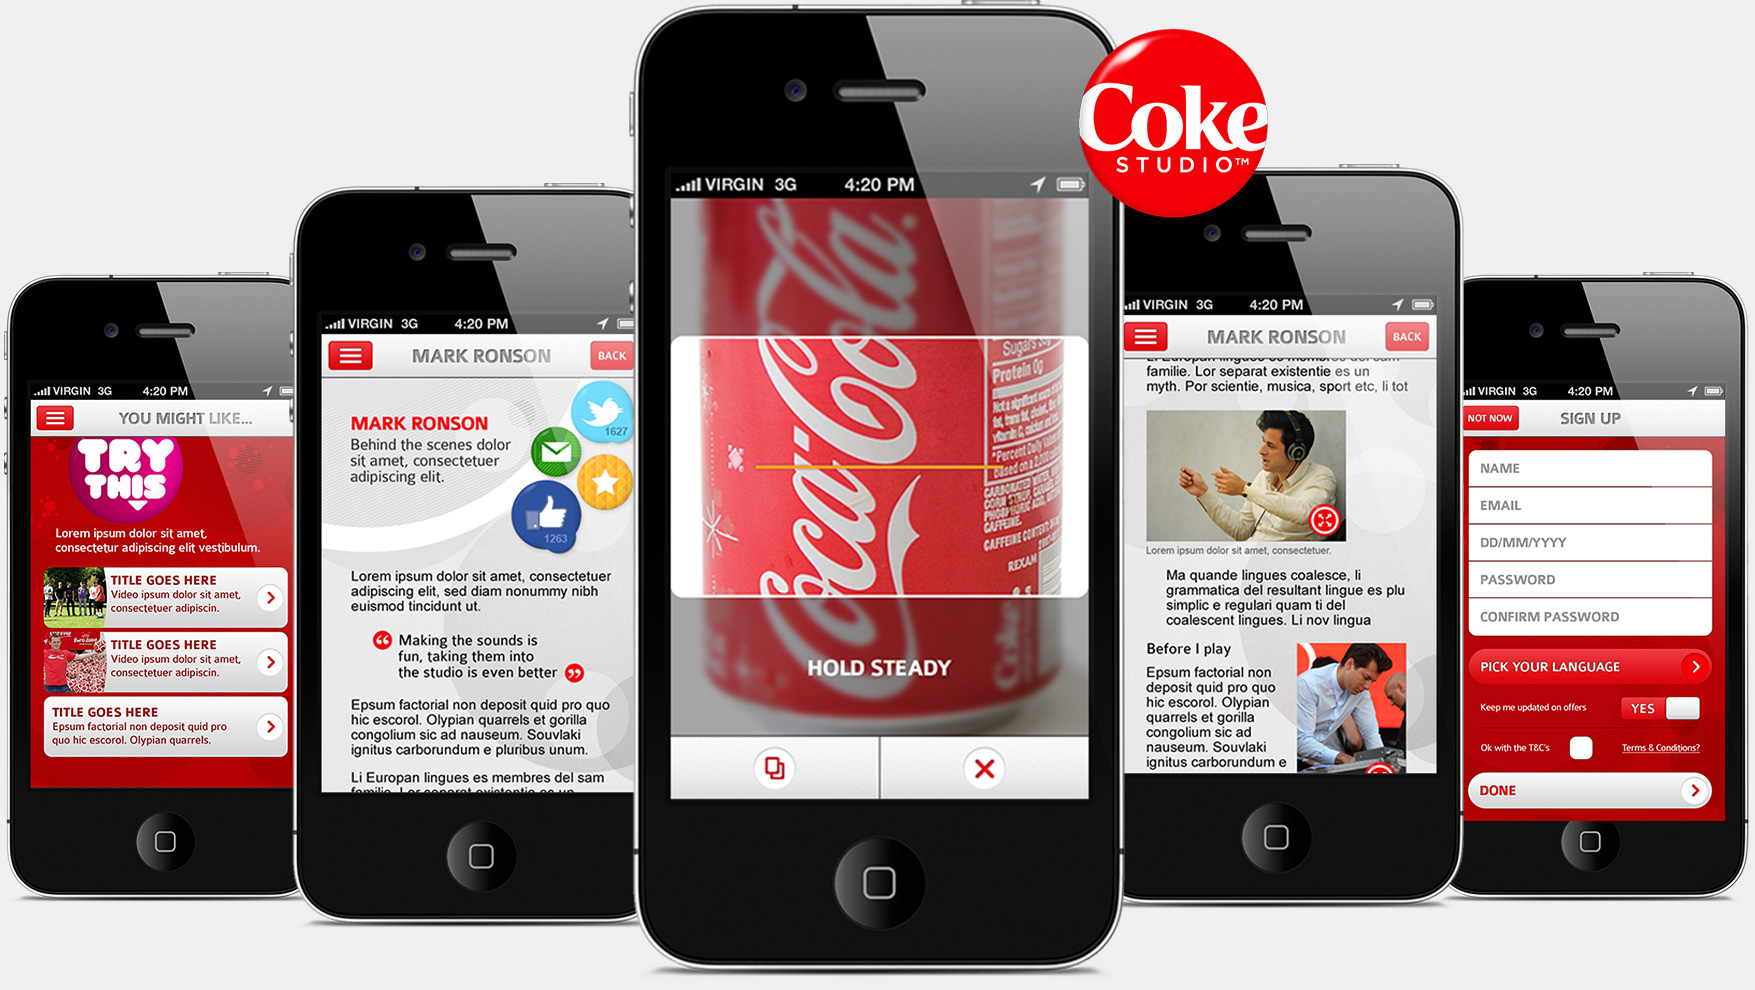 coca-cola-coke-studio-design-02